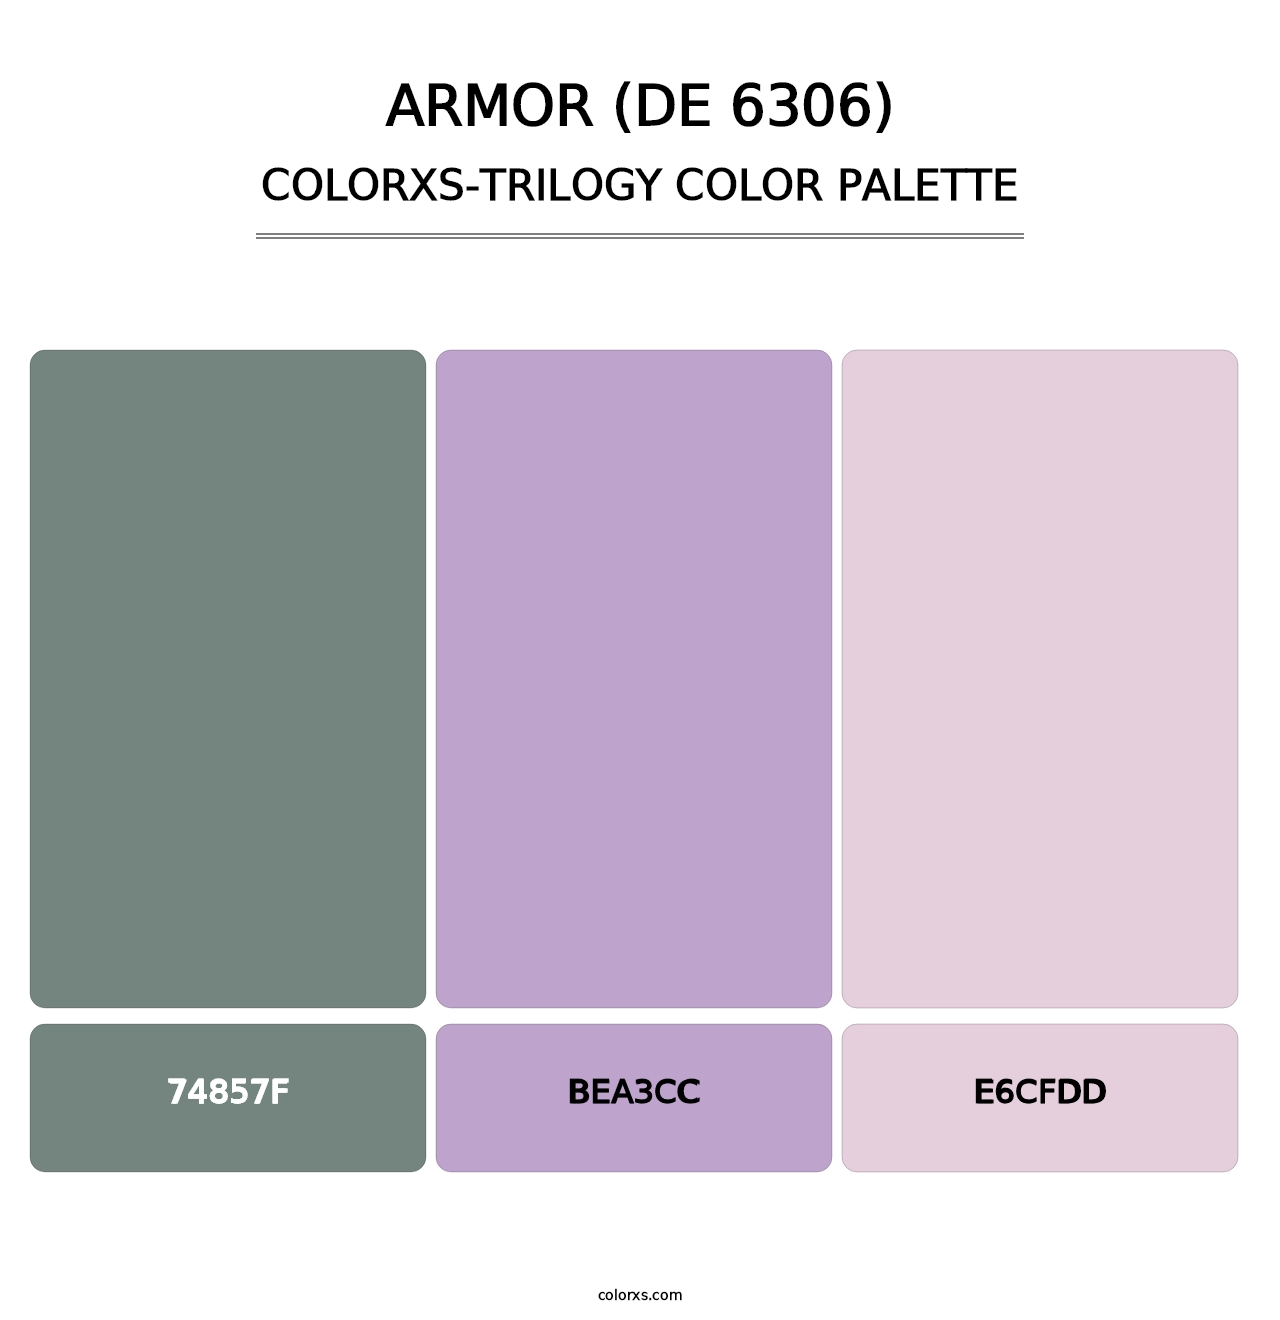 Armor (DE 6306) - Colorxs Trilogy Palette